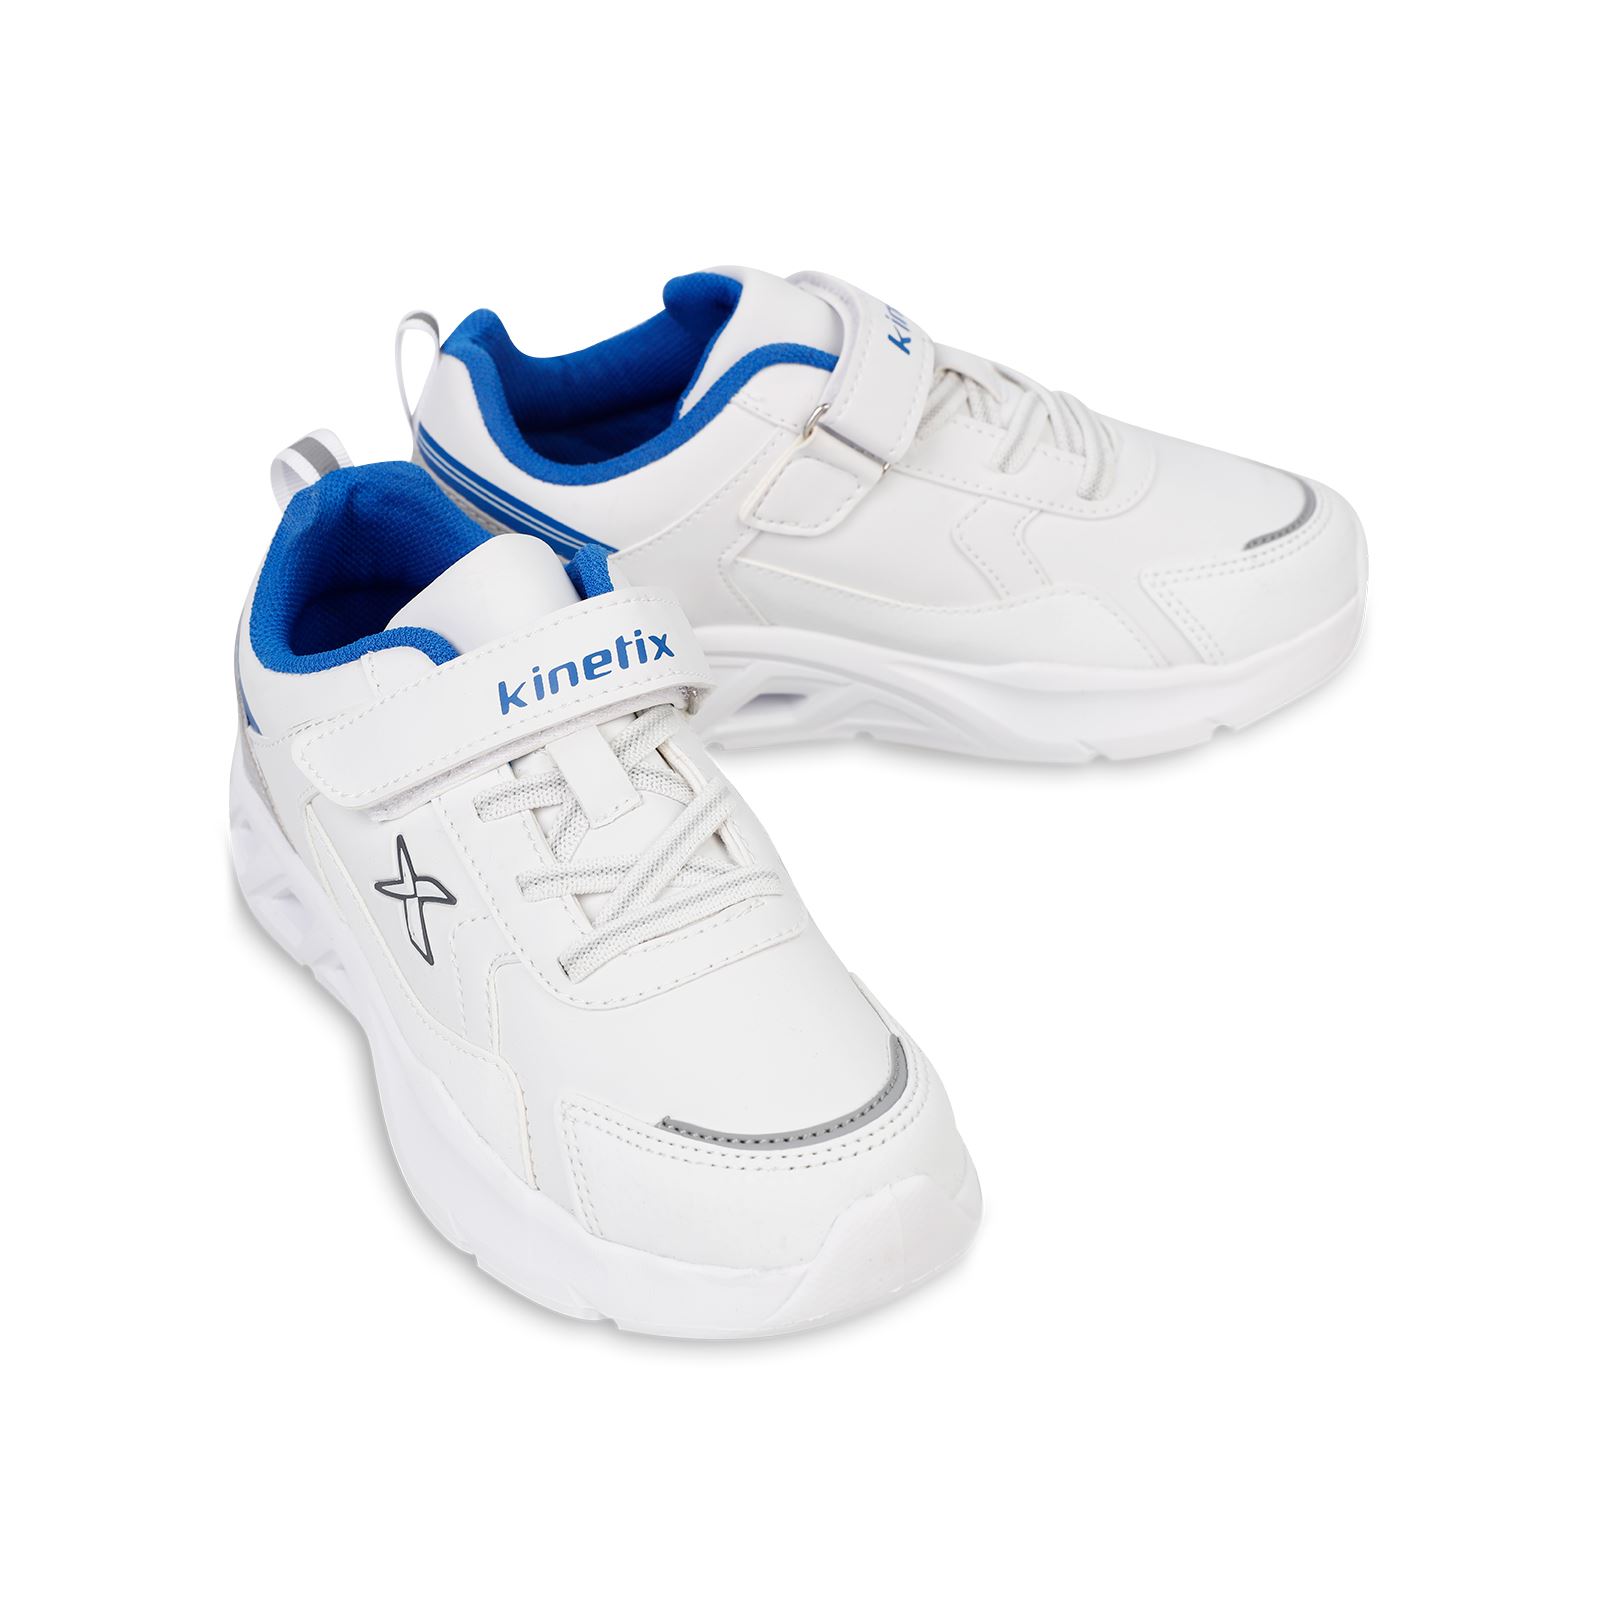 Kinetix Erkek Çocuk Spor Ayakkabı 32-37 Numara Beyaz